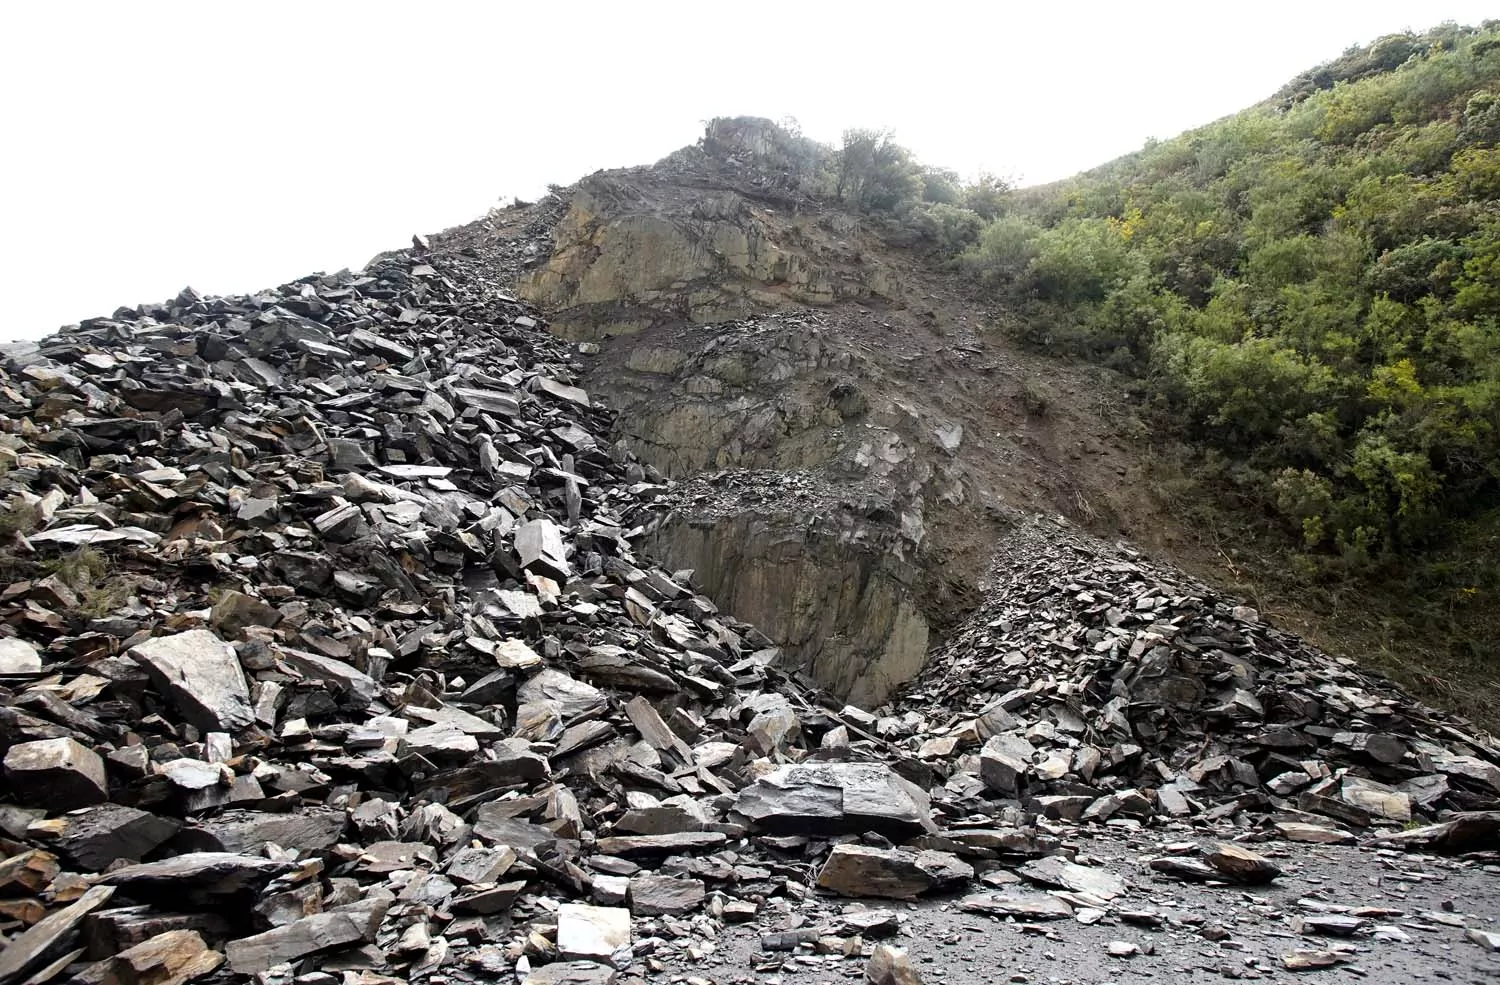 Desprendimiento de rocas y tierra en la carretera CL 631 en la localidad de Páramo del Sil (11)